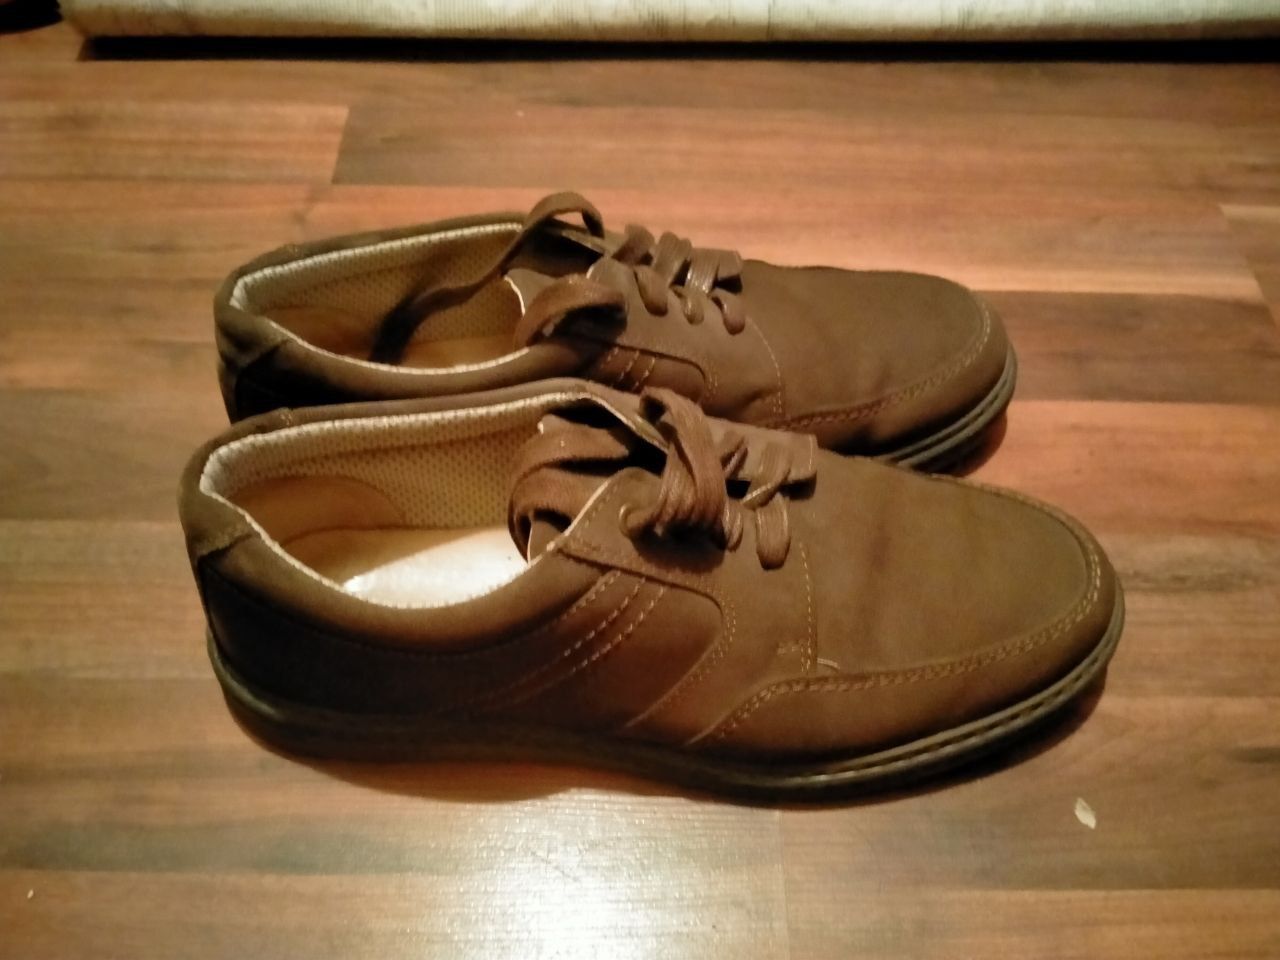 Туфли мужские коричневого цвета